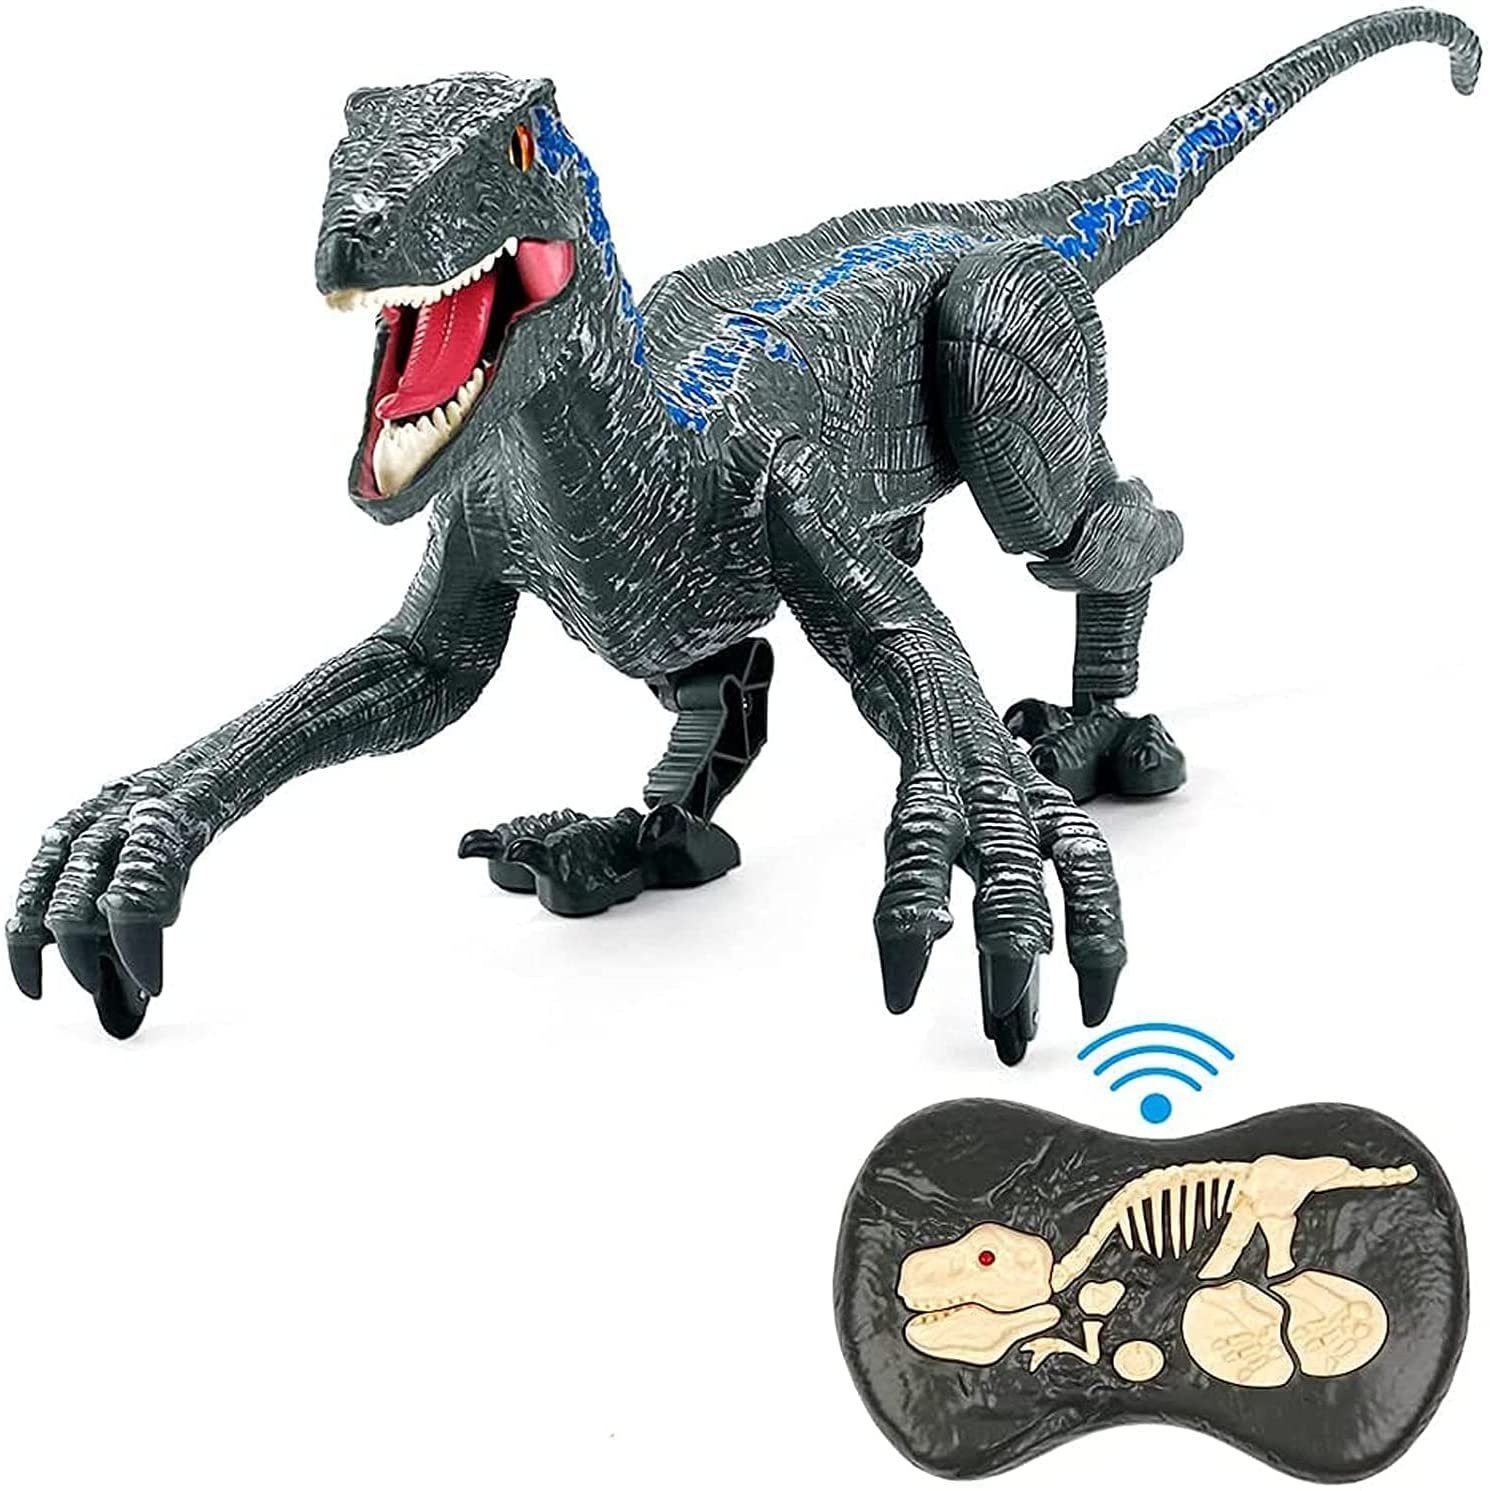 Spielfigur Velociraptor Sammelfigur Dinosaurier Saurier Figur Spielwaren NEU NEW 